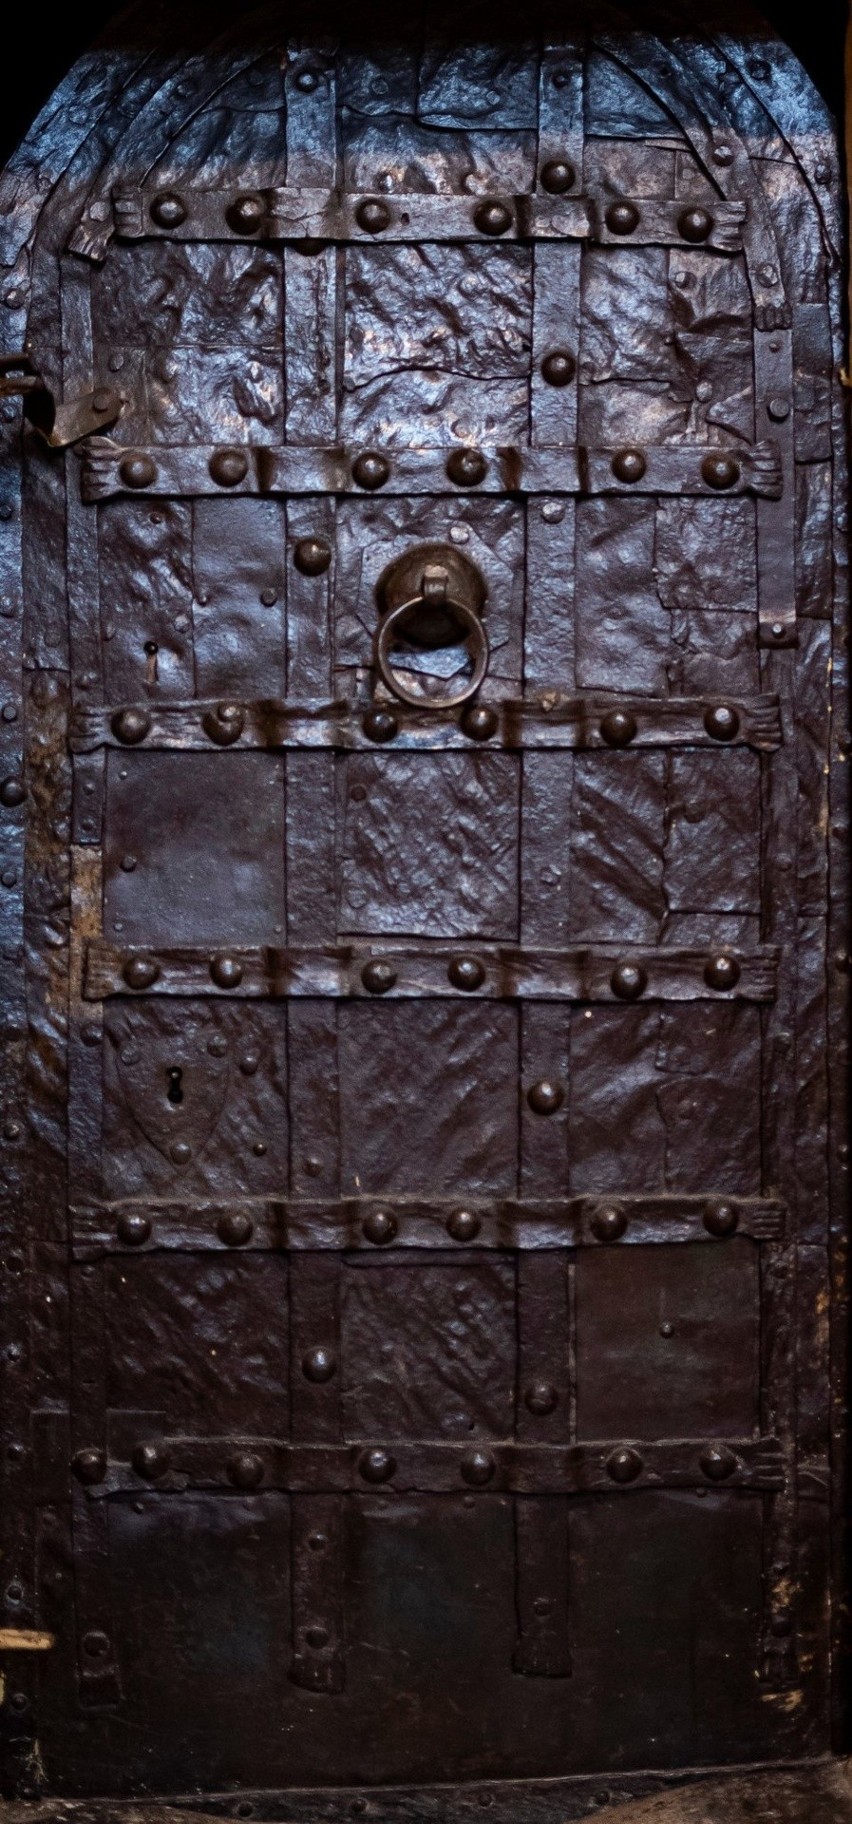 Zabytkowe gotyckie drzwi klasztoru Cystersów w Jędrzejowie mogą być starsze niż sądzono. Zobaczcie zdjęcia